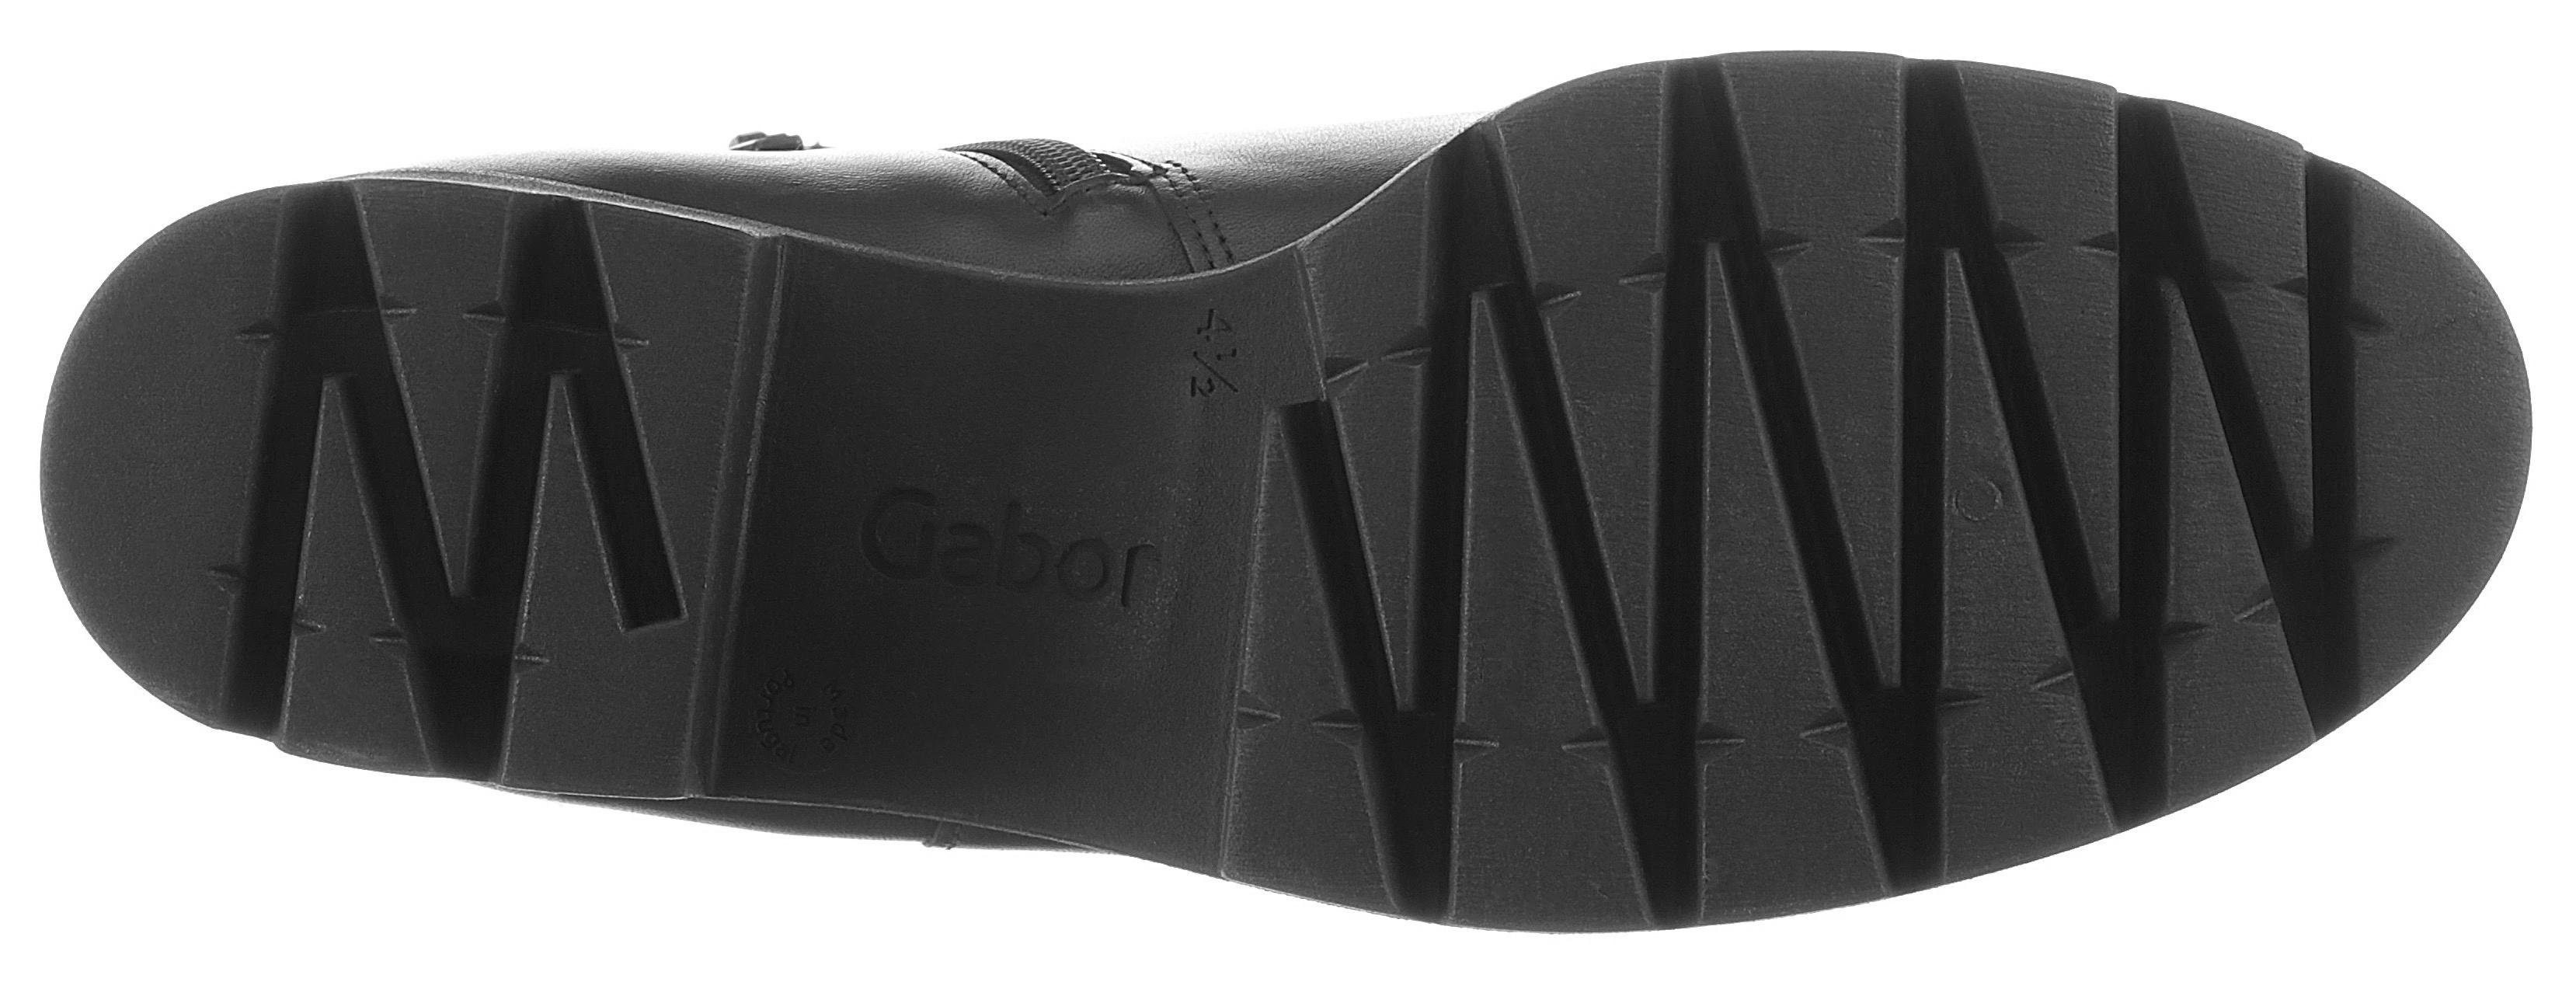 Gabor Chelseaboots mit angesagter Profilsohle schwarz